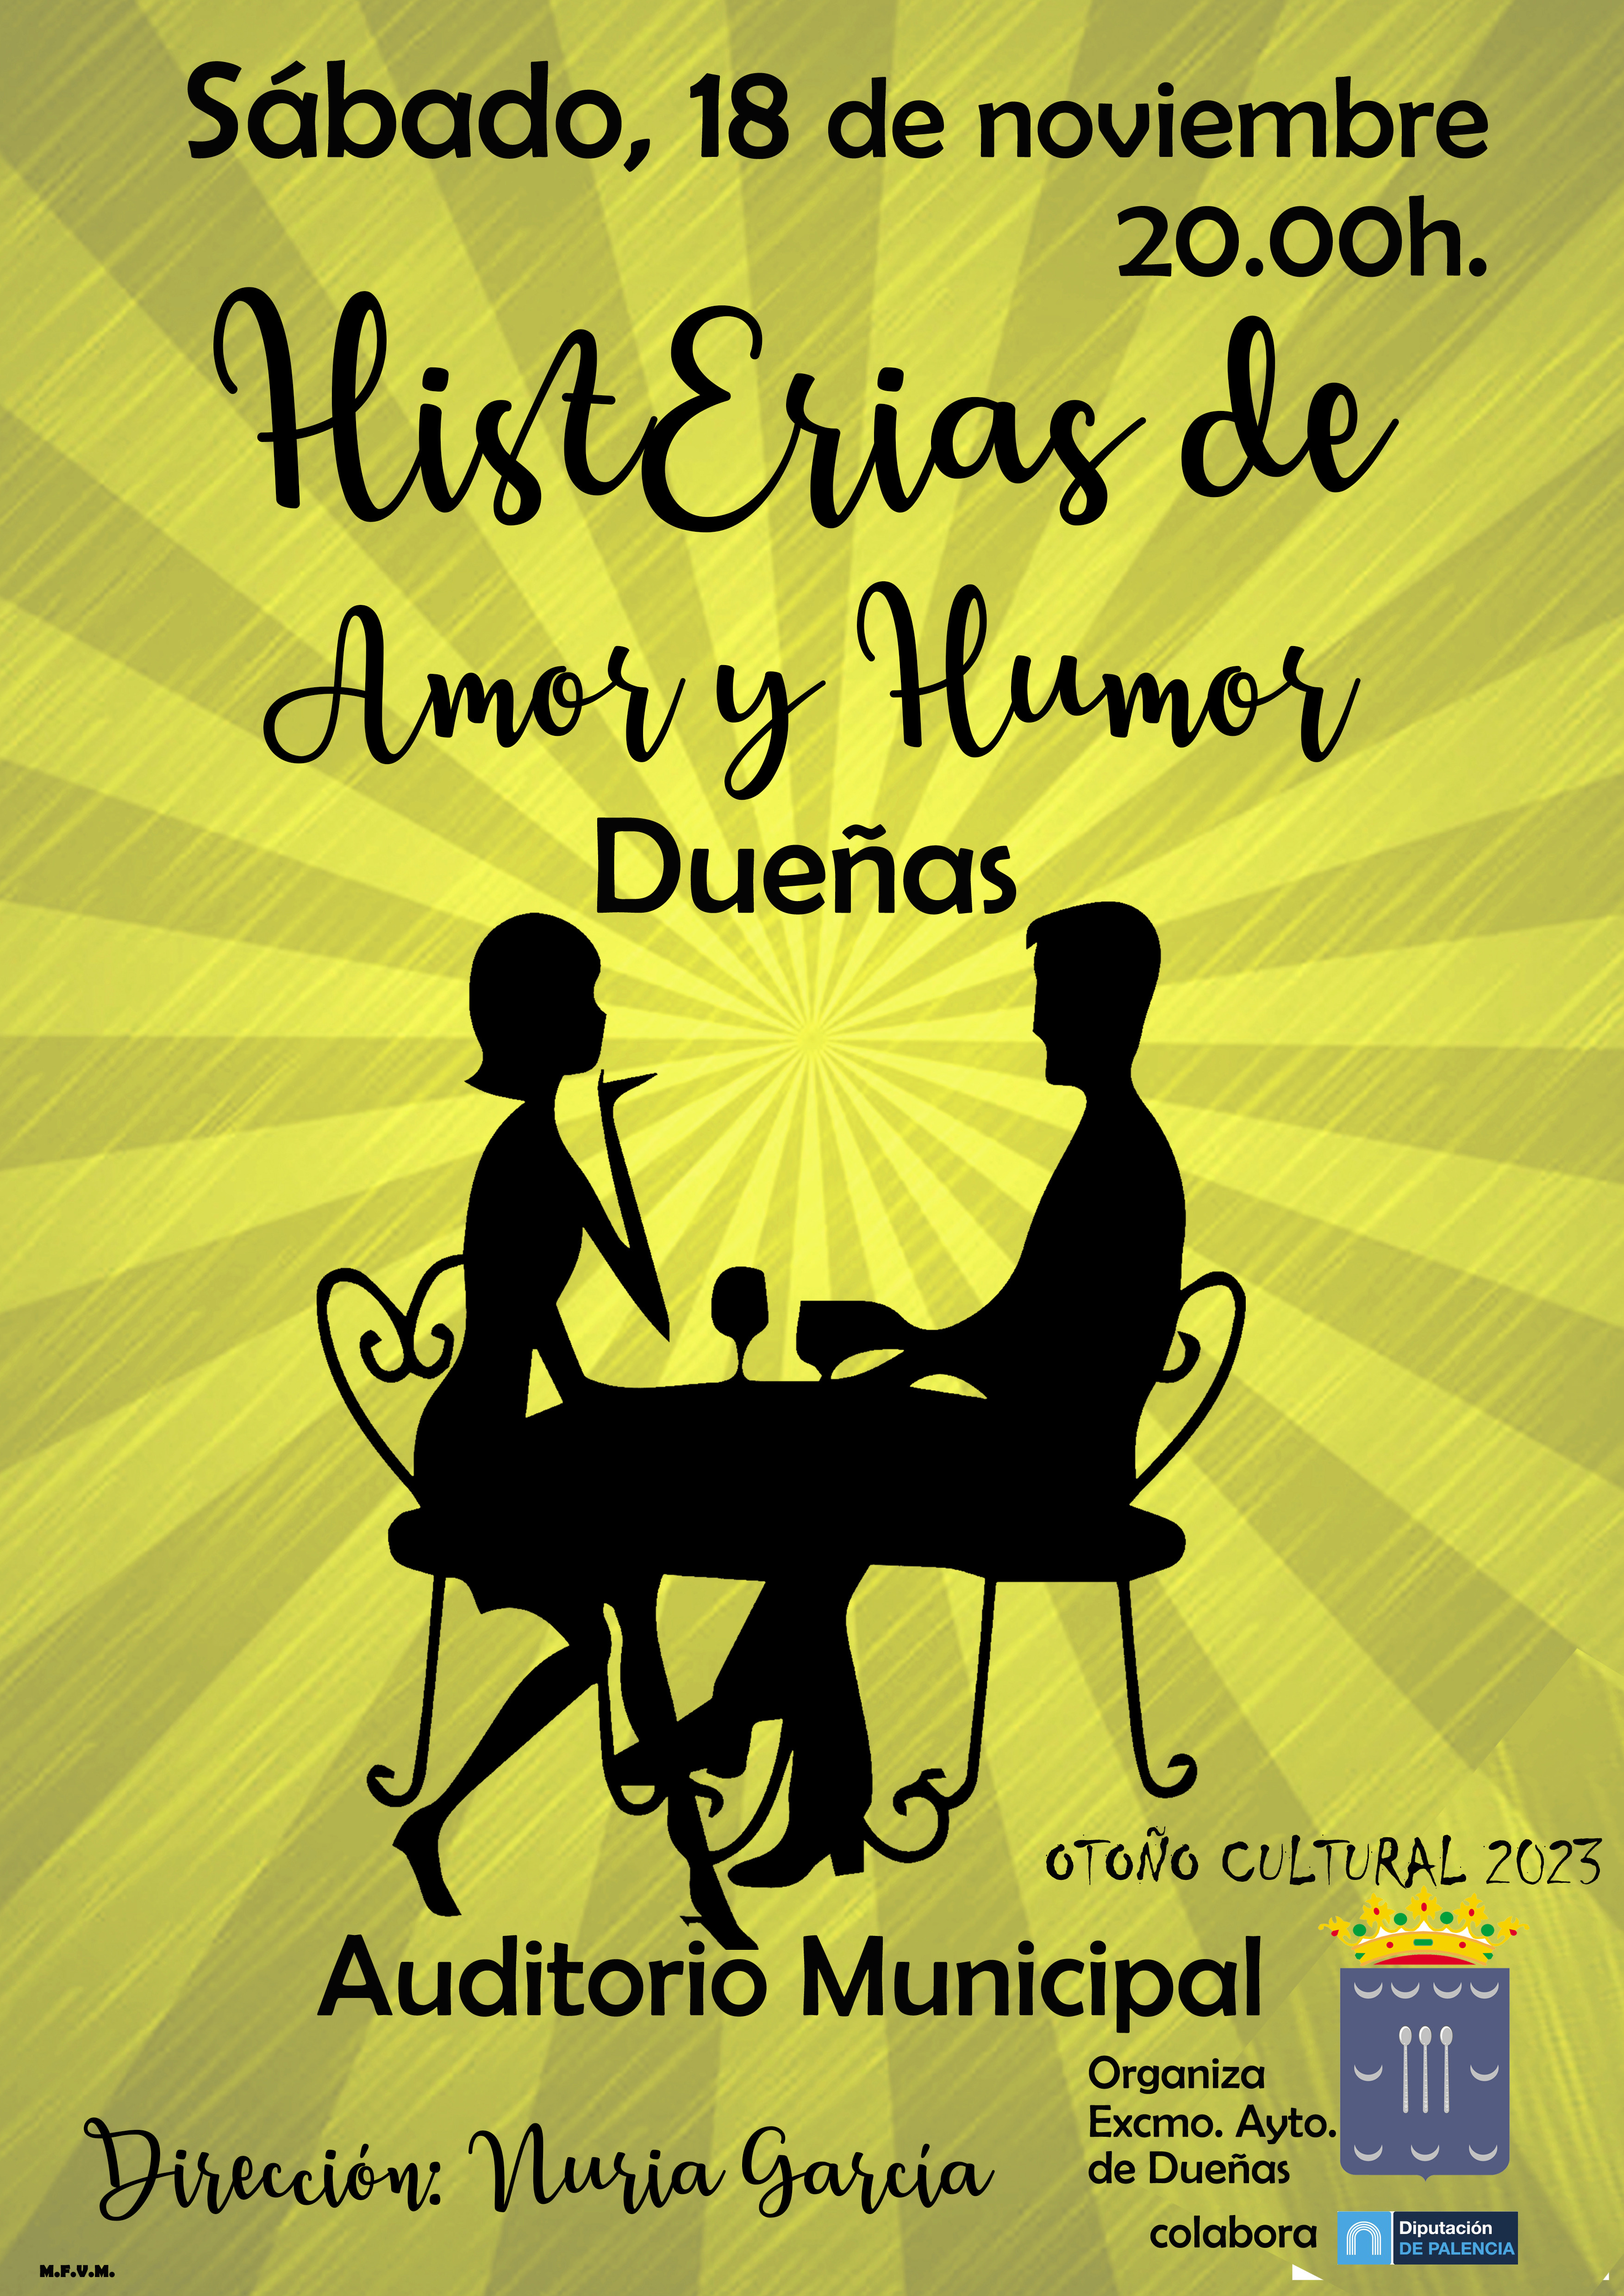 18 de noviembre de 2023: Teatro en el Auditorio Municipal de Dueñas, a las 20:00h.